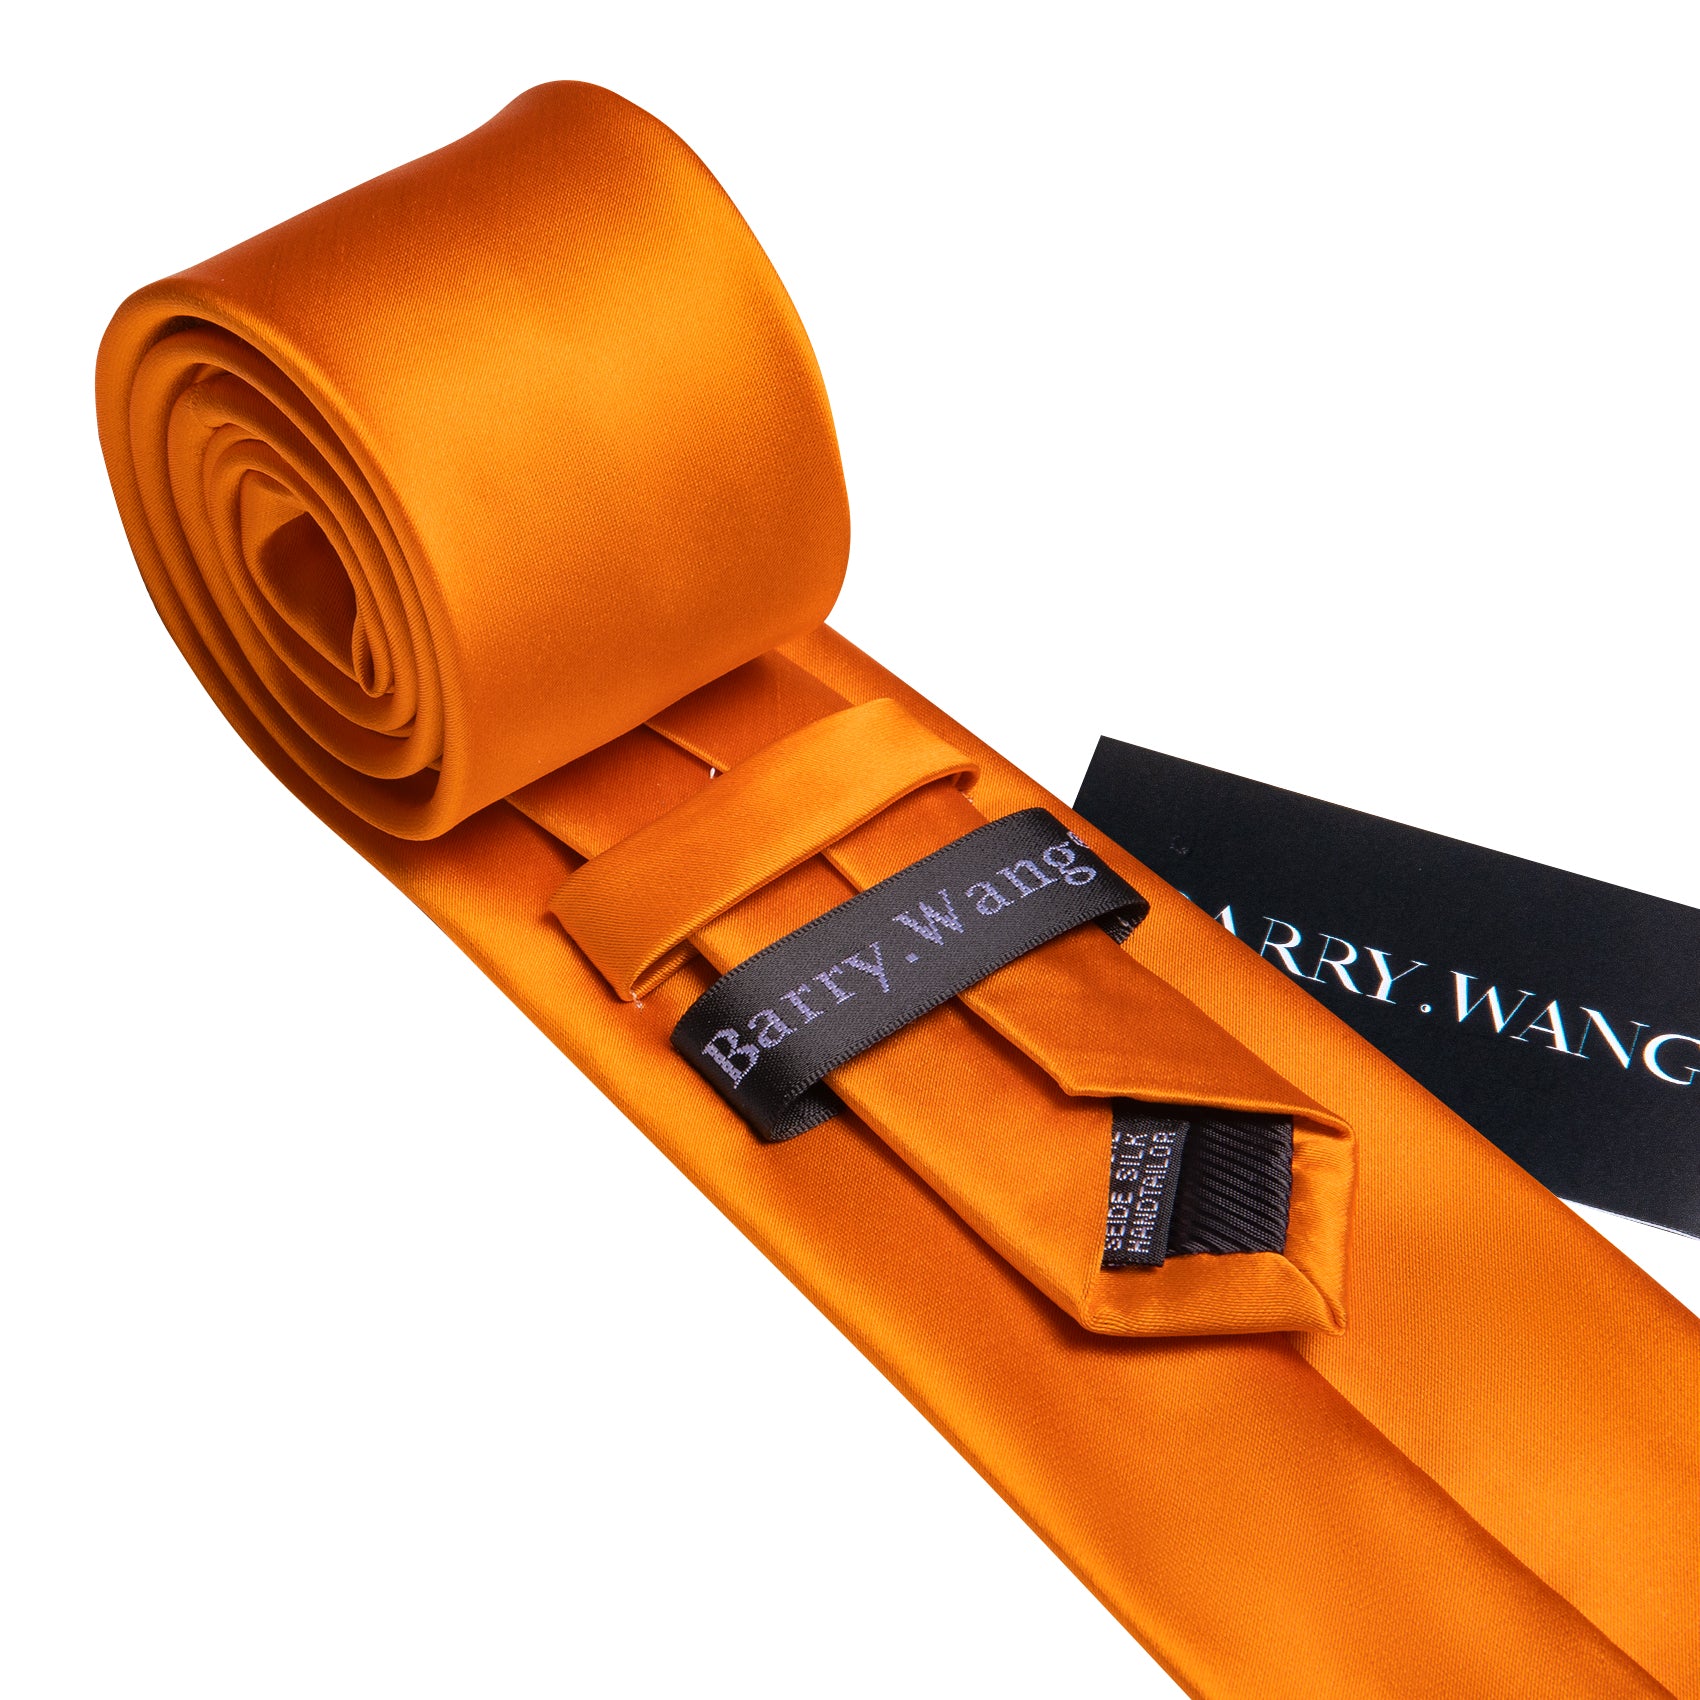 Orange Solid Silk Tie Pocket Square Cufflinks Set